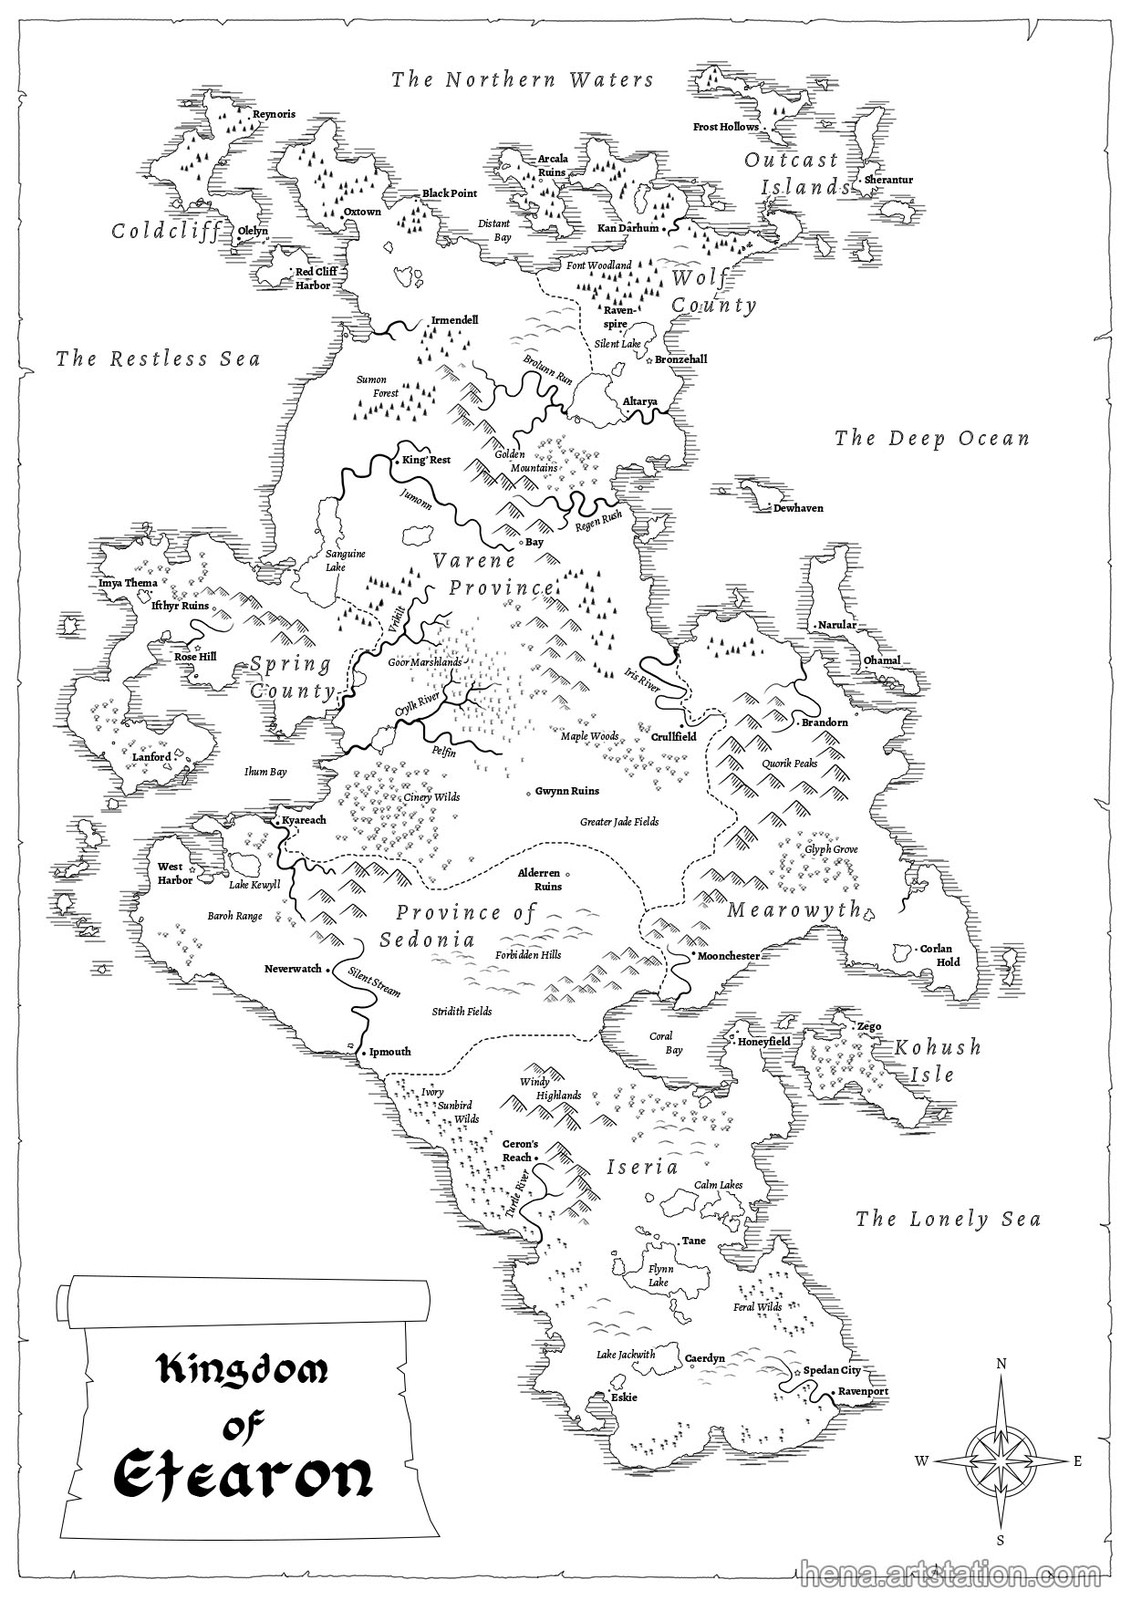 Map of Etearon